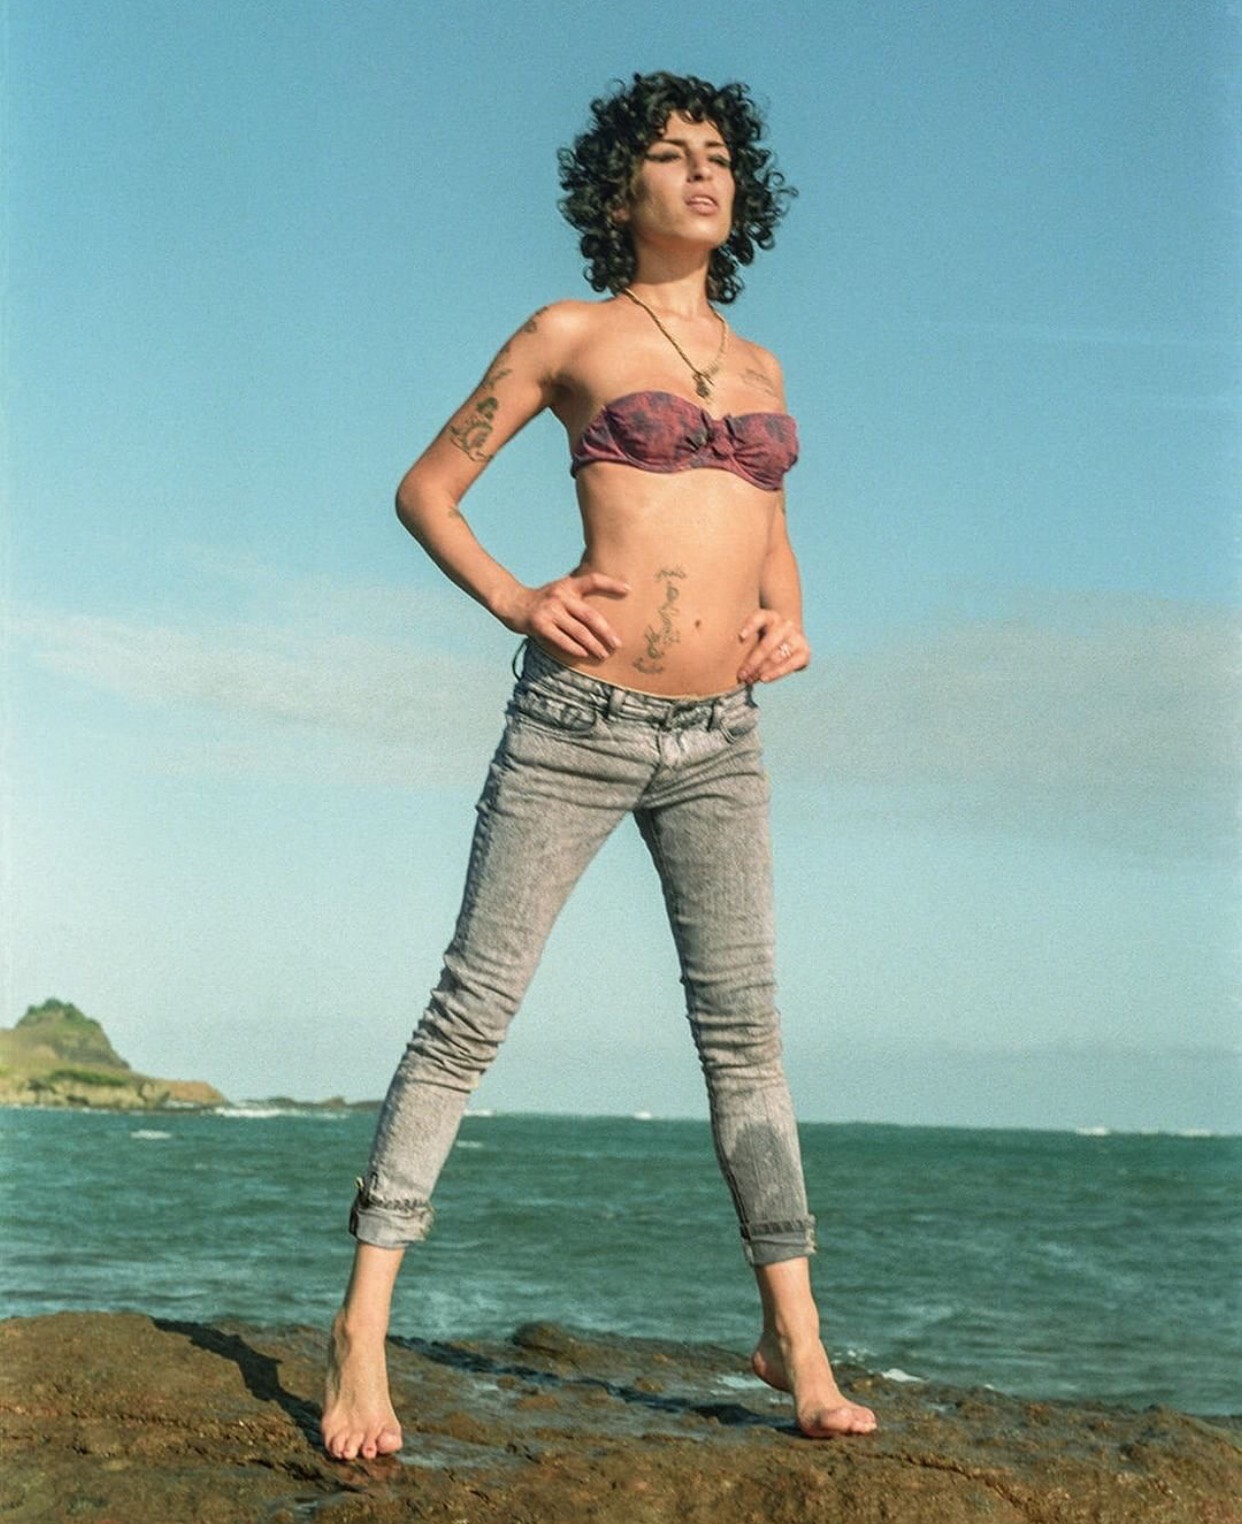 Taschen lança livro com fotografias inéditas de Amy Winehouse